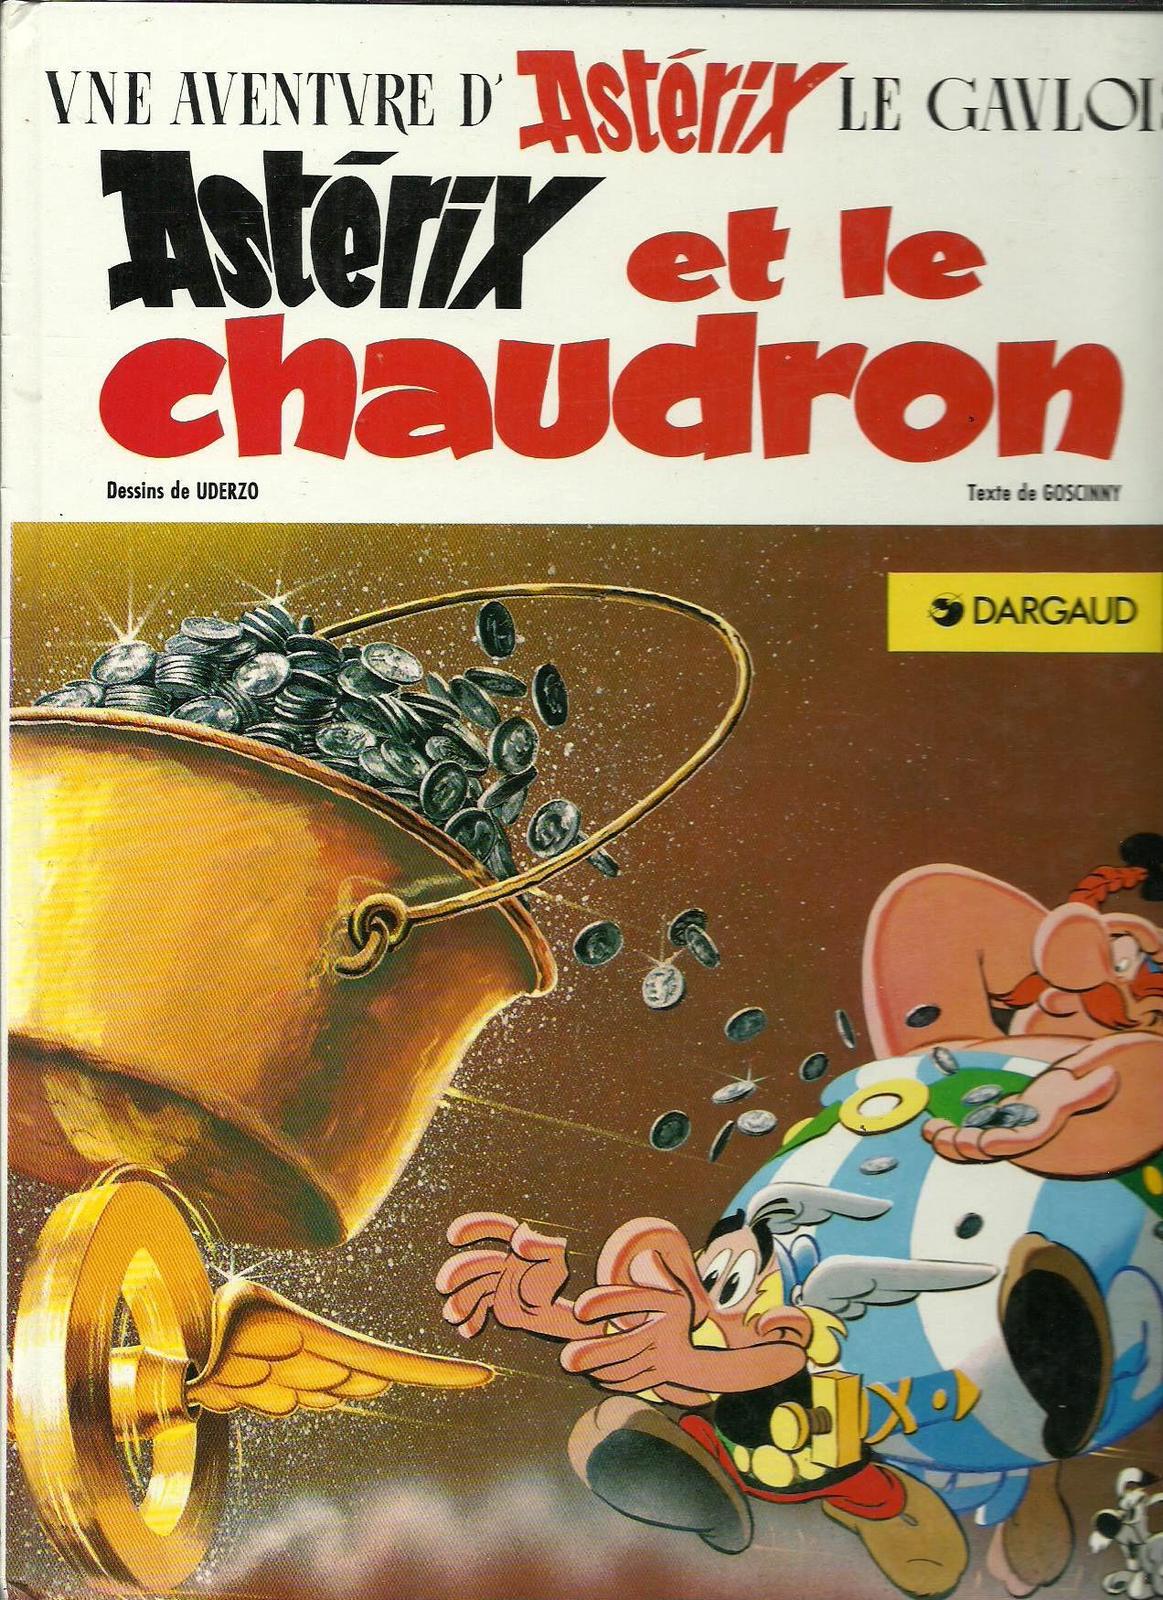 Astérix et le chaudron (French language, 1984, Dargaud)